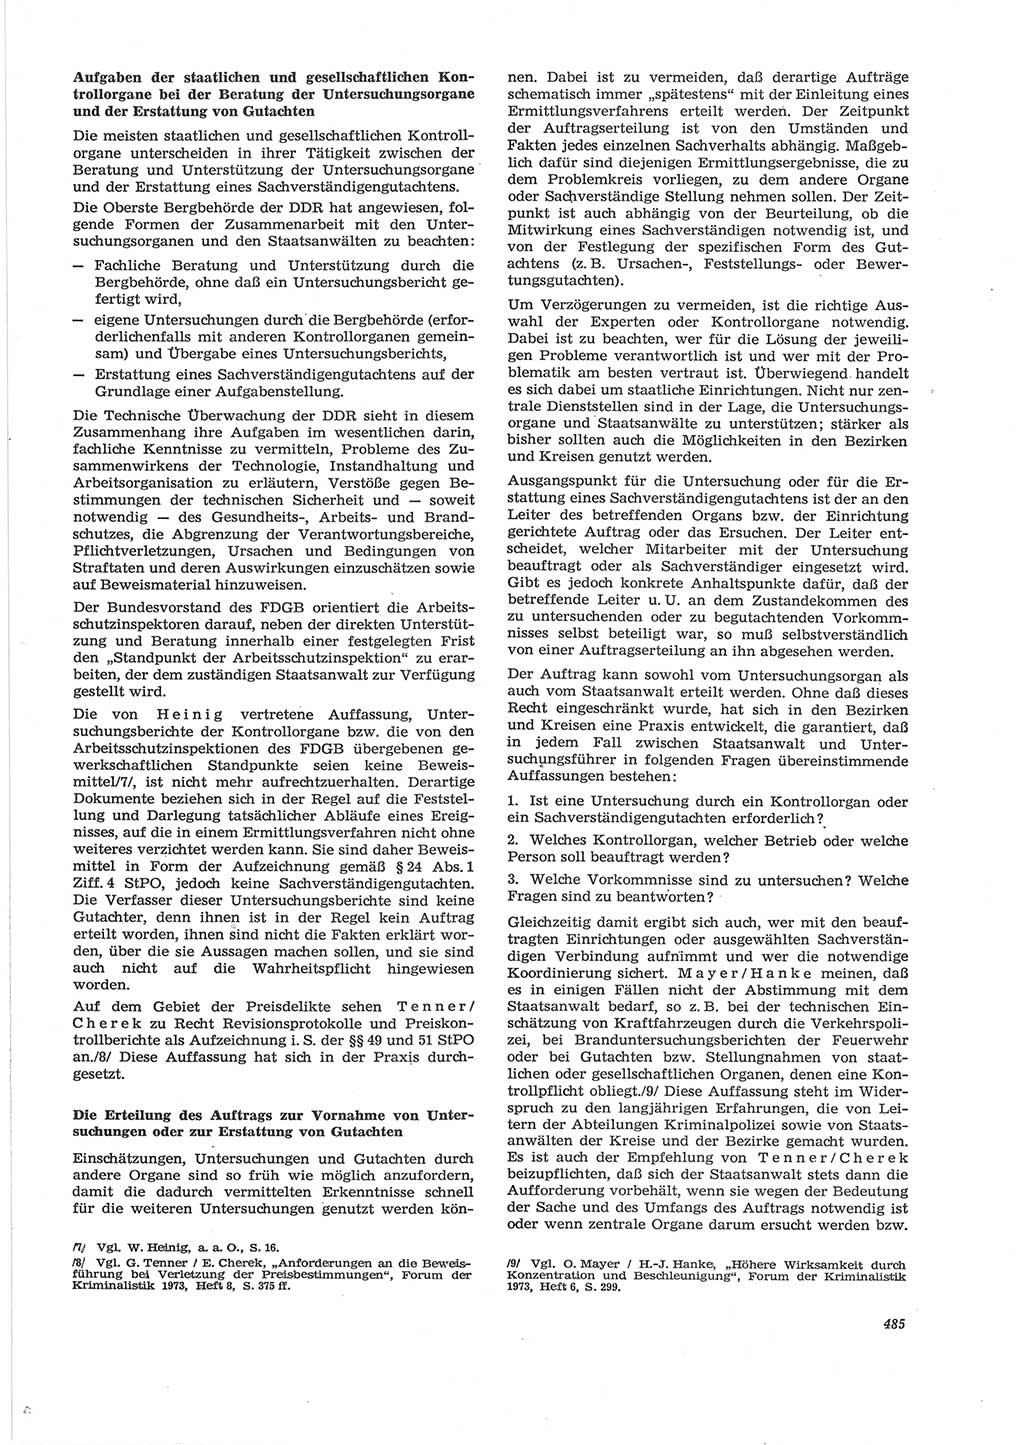 Neue Justiz (NJ), Zeitschrift für Recht und Rechtswissenschaft [Deutsche Demokratische Republik (DDR)], 28. Jahrgang 1974, Seite 485 (NJ DDR 1974, S. 485)